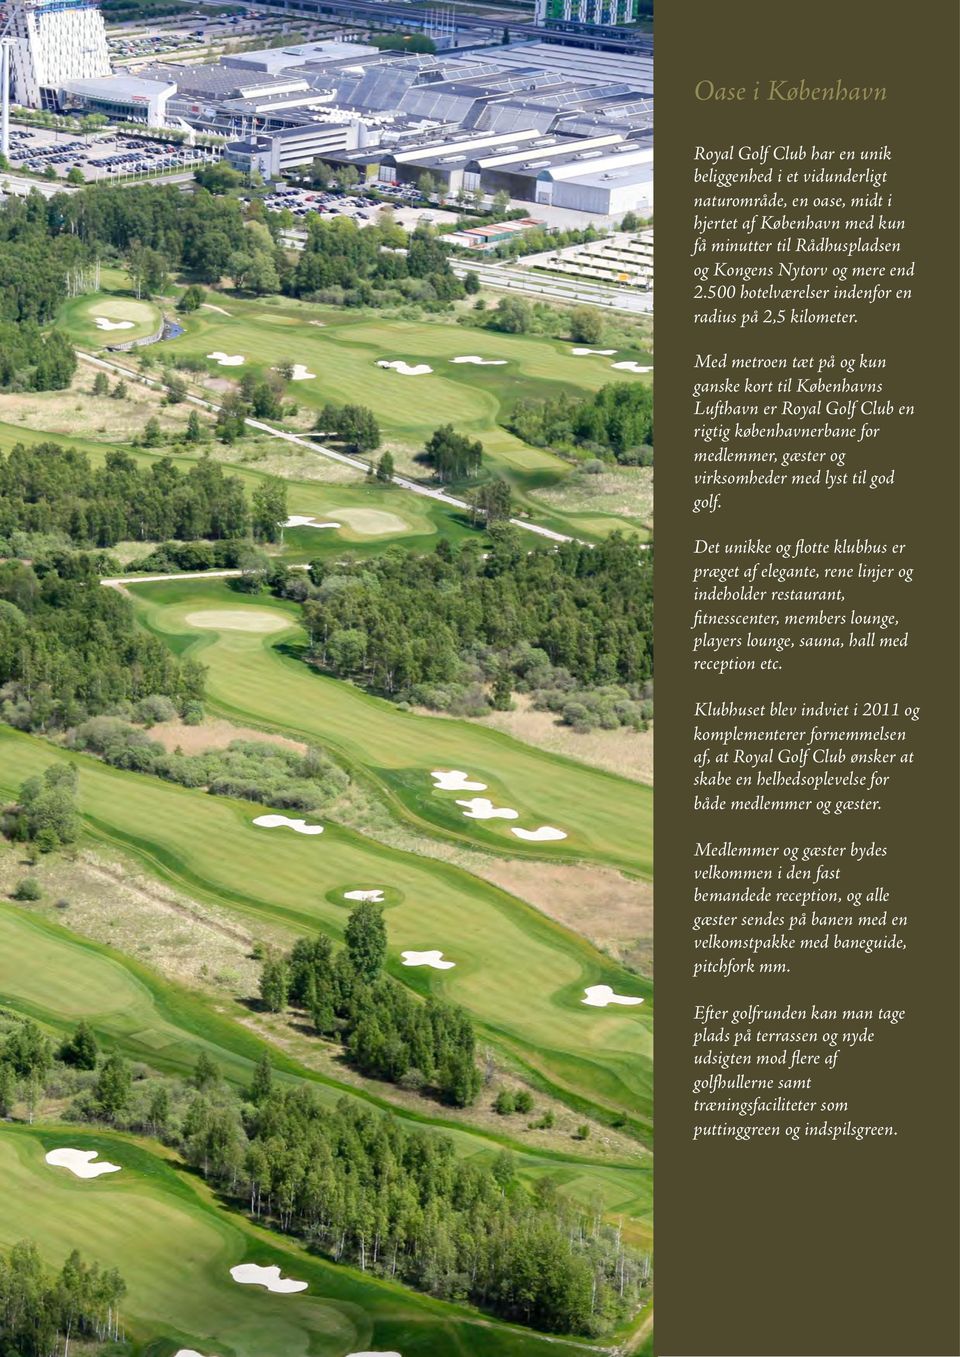 Med metroen tæt på og kun ganske kort til Københavns Lufthavn er Royal Golf Club en rigtig københavnerbane for medlemmer, gæster og virksomheder med lyst til god golf.